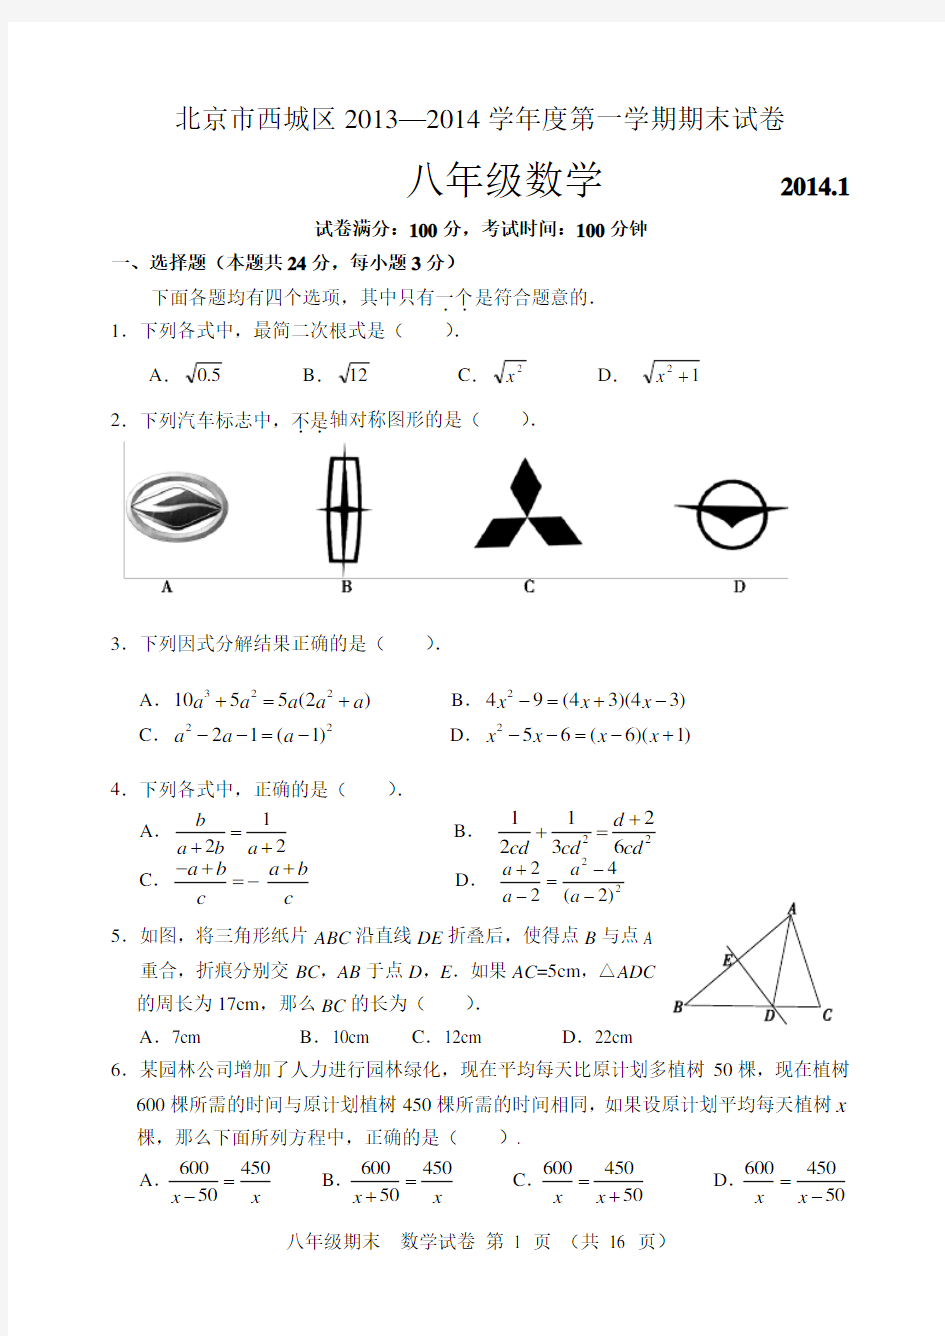 北京市西城区2013-2014八年级第一学期期末统考数学试卷及答案(含附加题及答案)